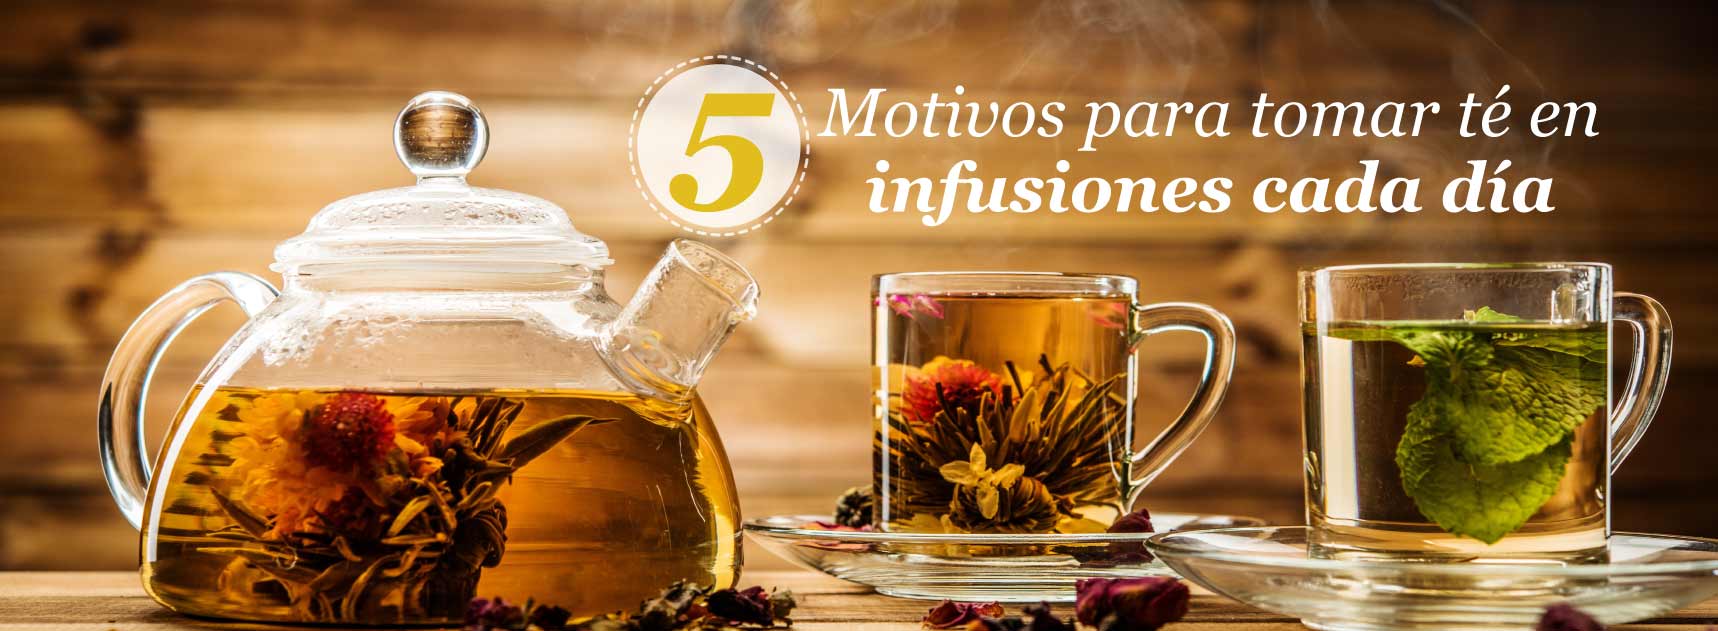 5 motivos para tomar té en infusiones cada día